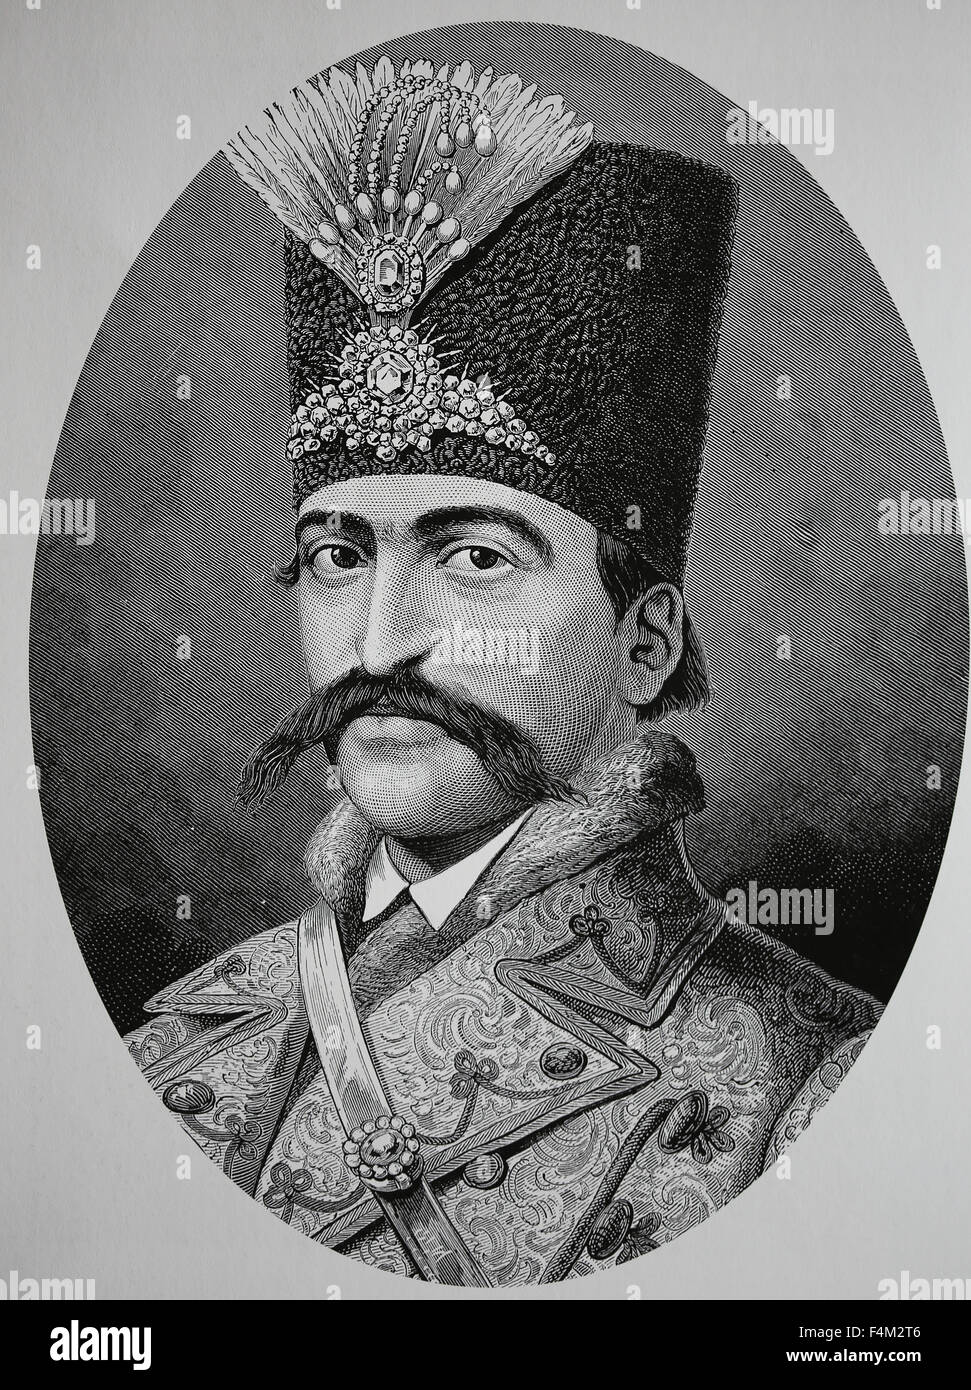 Naser al-Din Shah Qajar (1831-1896). Roi de Perse à partir de 1848-1896. Il a été assassiné. Dynastie Qajar. La gravure. 19e siècle. Banque D'Images